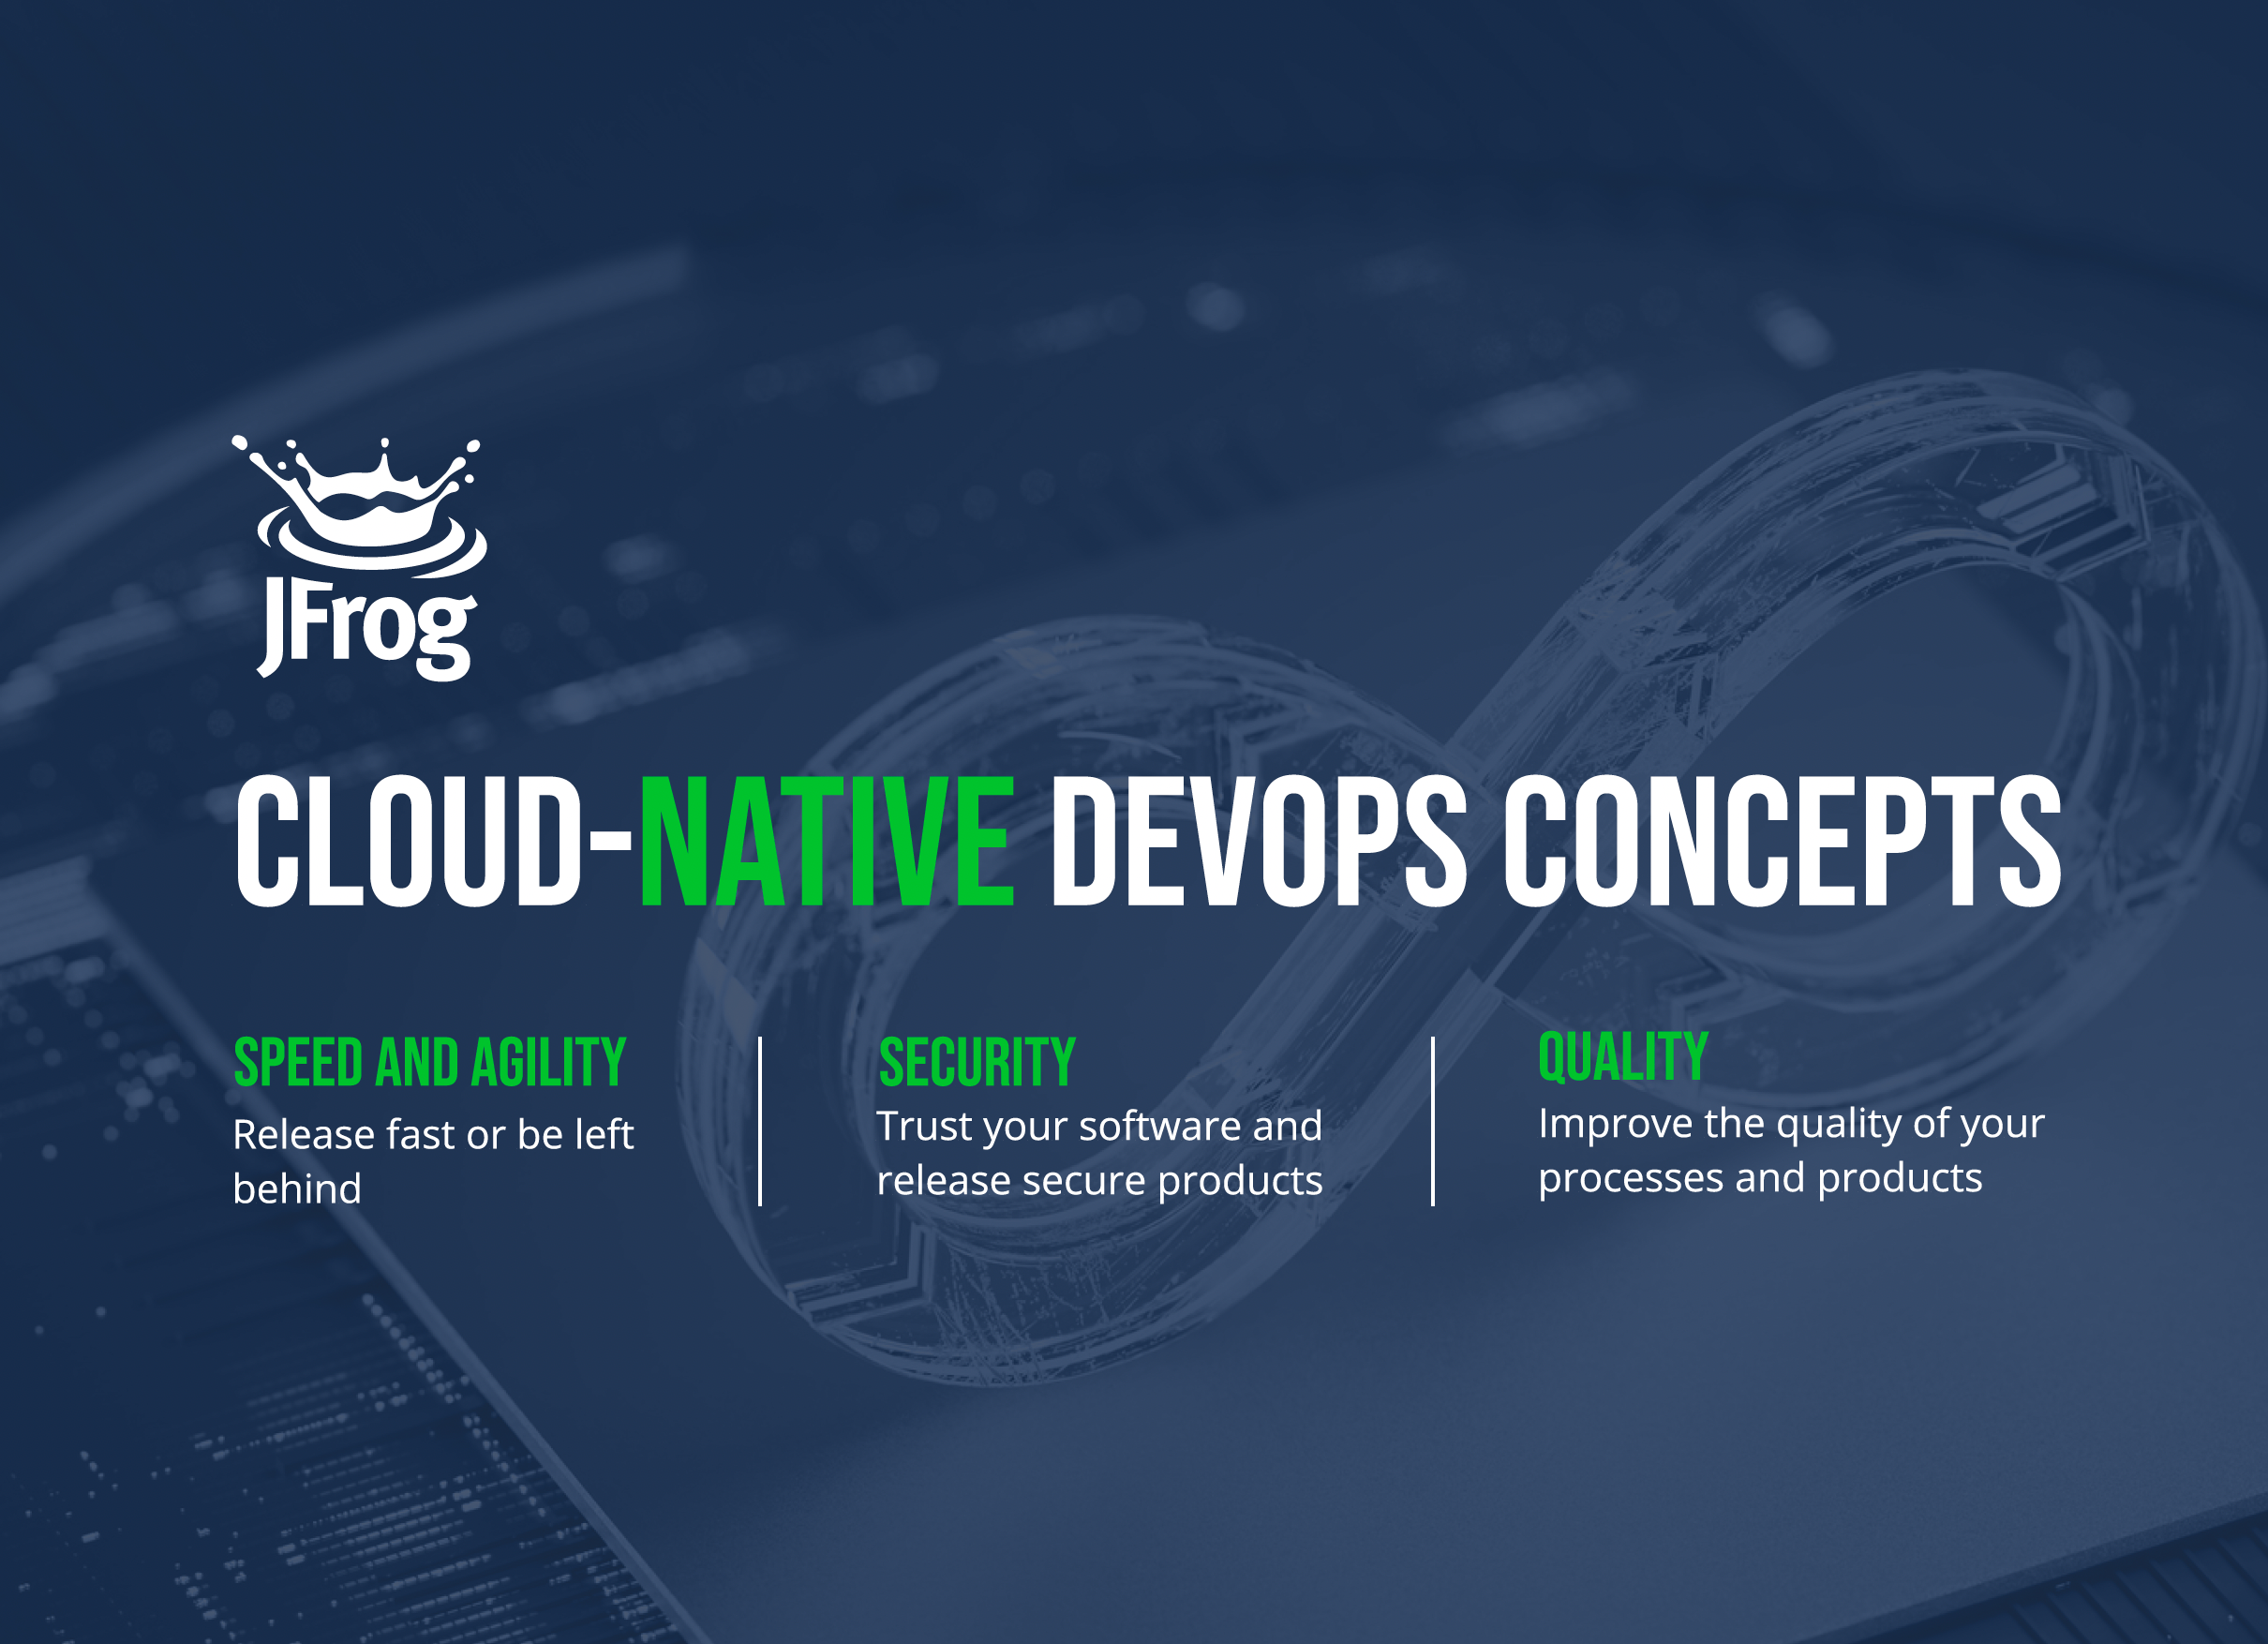 JFrog Cloud-Native DevOps Concepts